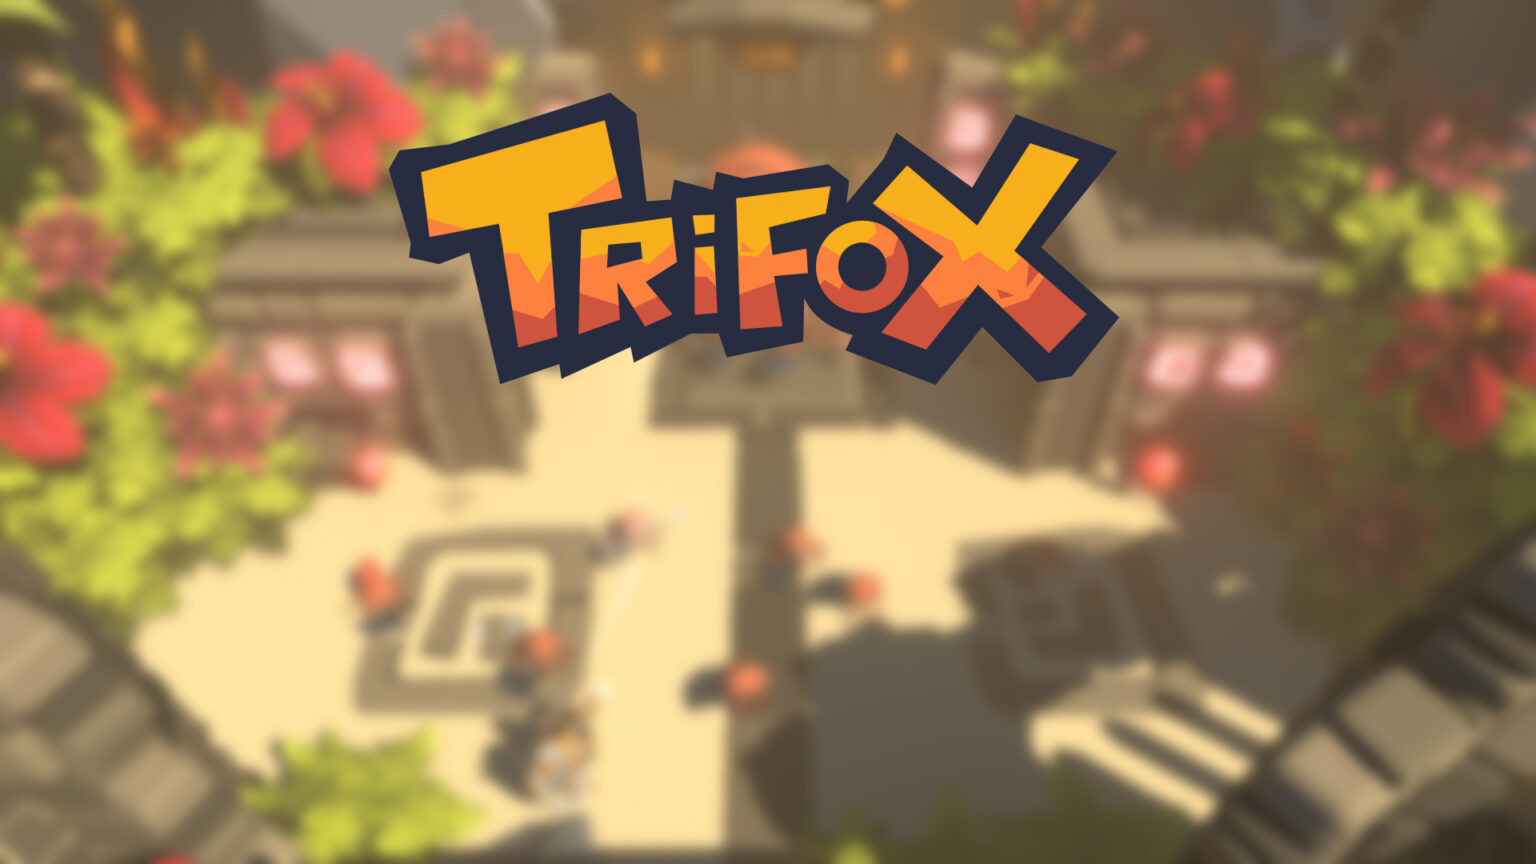 trifox gameplay